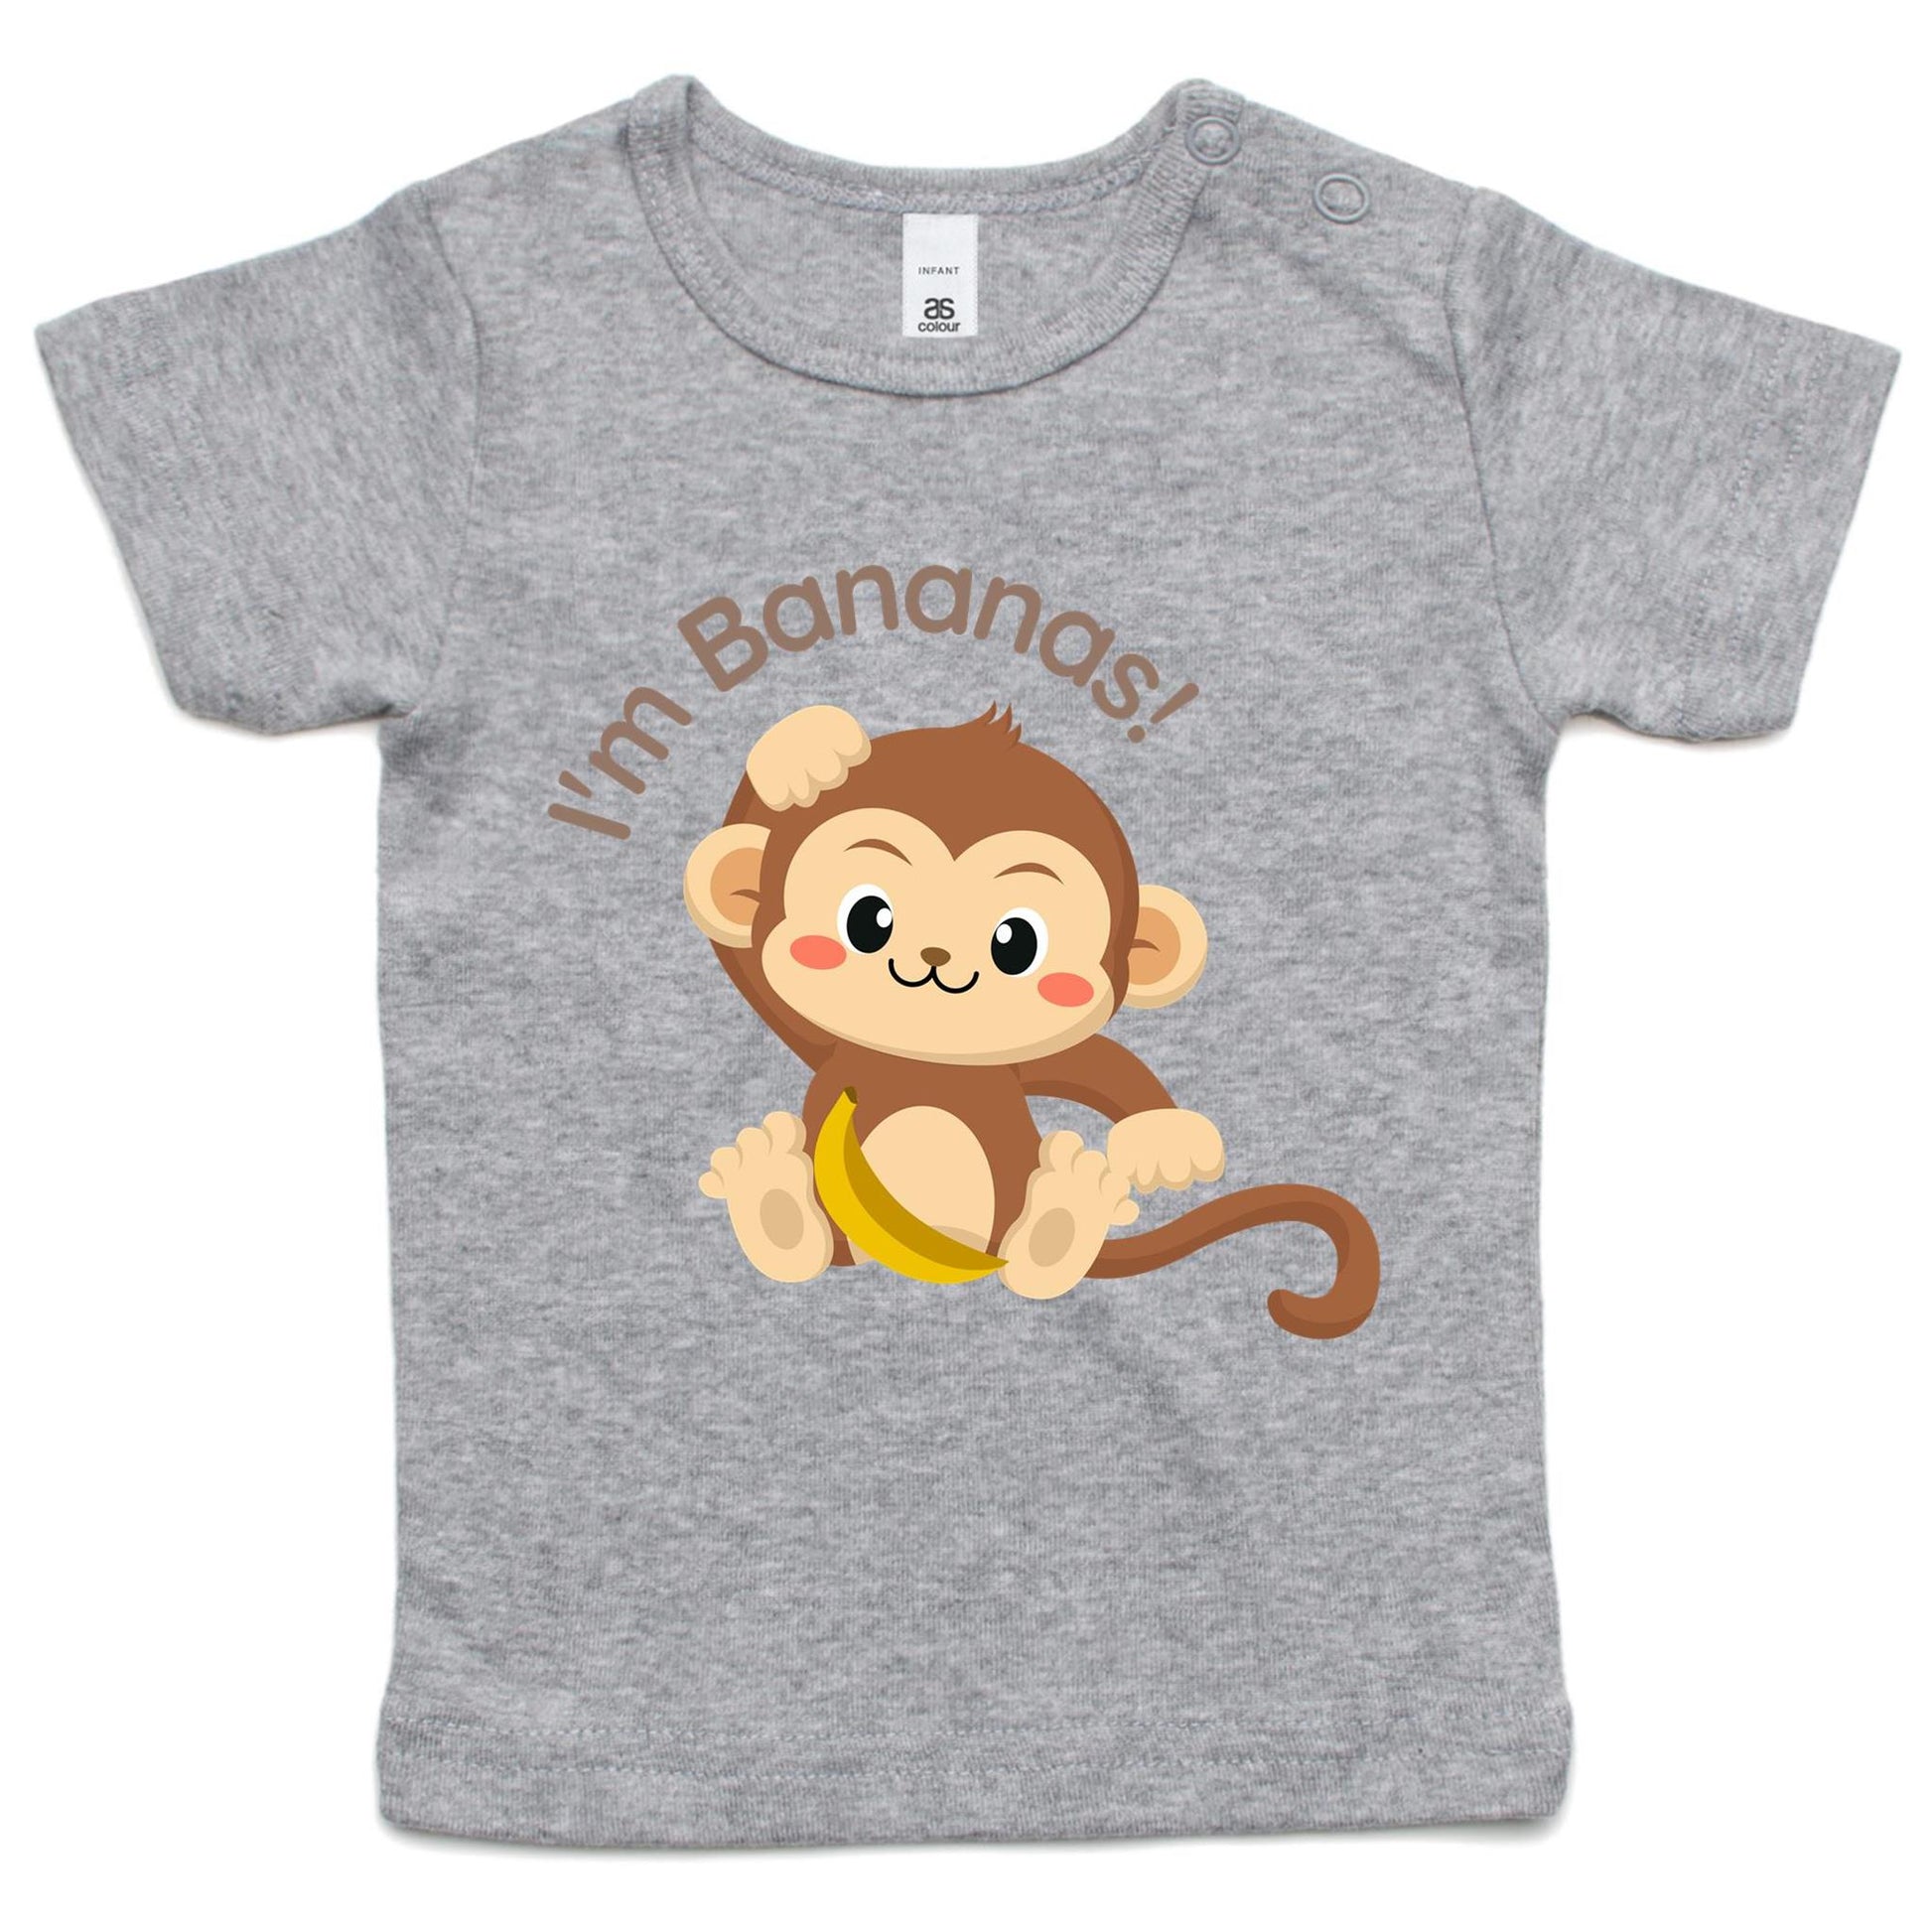 I'm Bananas - Baby T-shirt Grey Marle Baby T-shirt animal